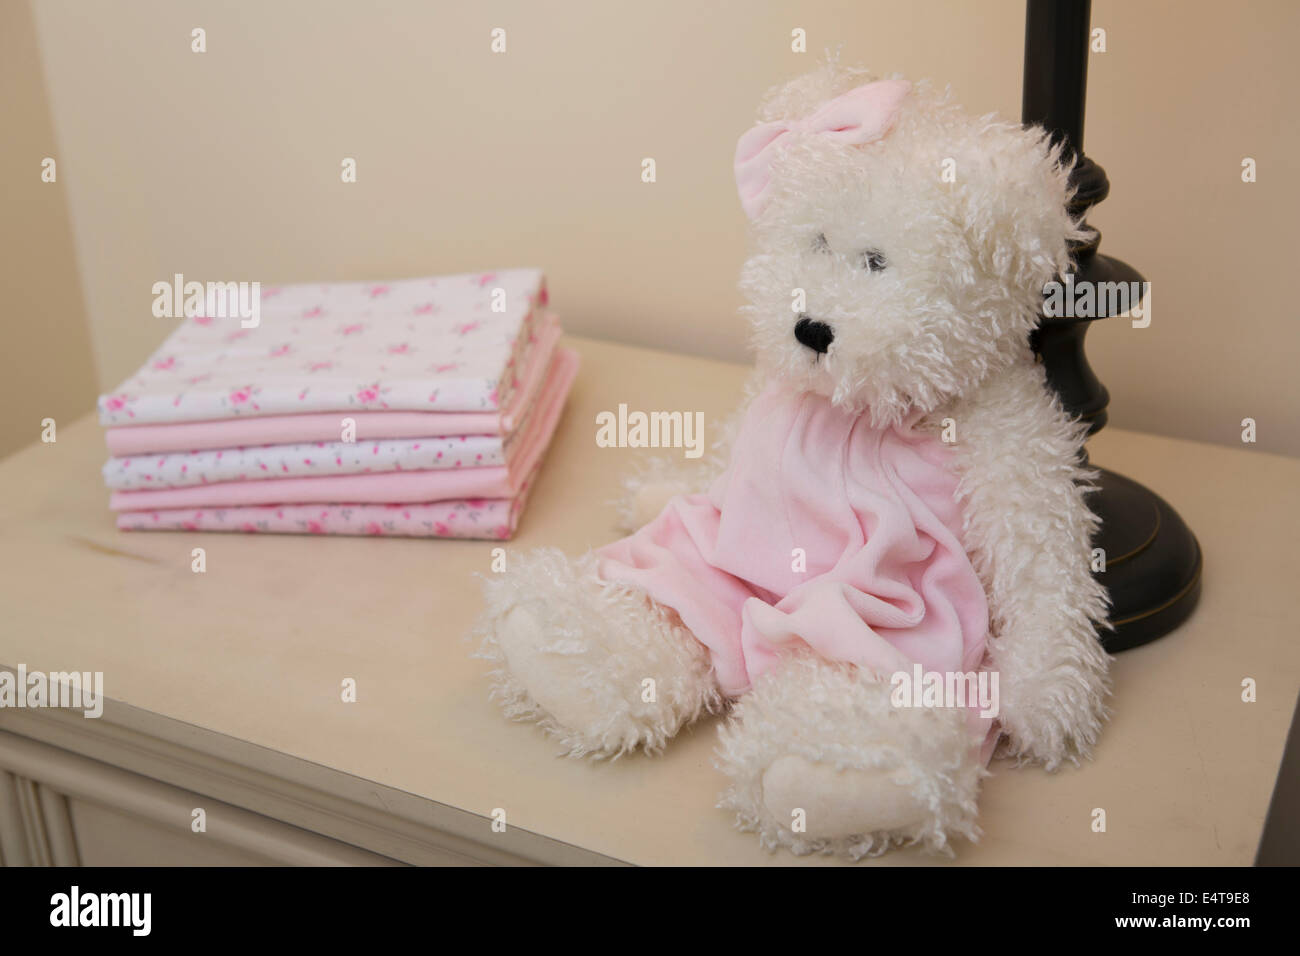 Stapel von Babydecke auf Kommode neben Teddybär und Lampe im Kinderzimmer Stockfoto